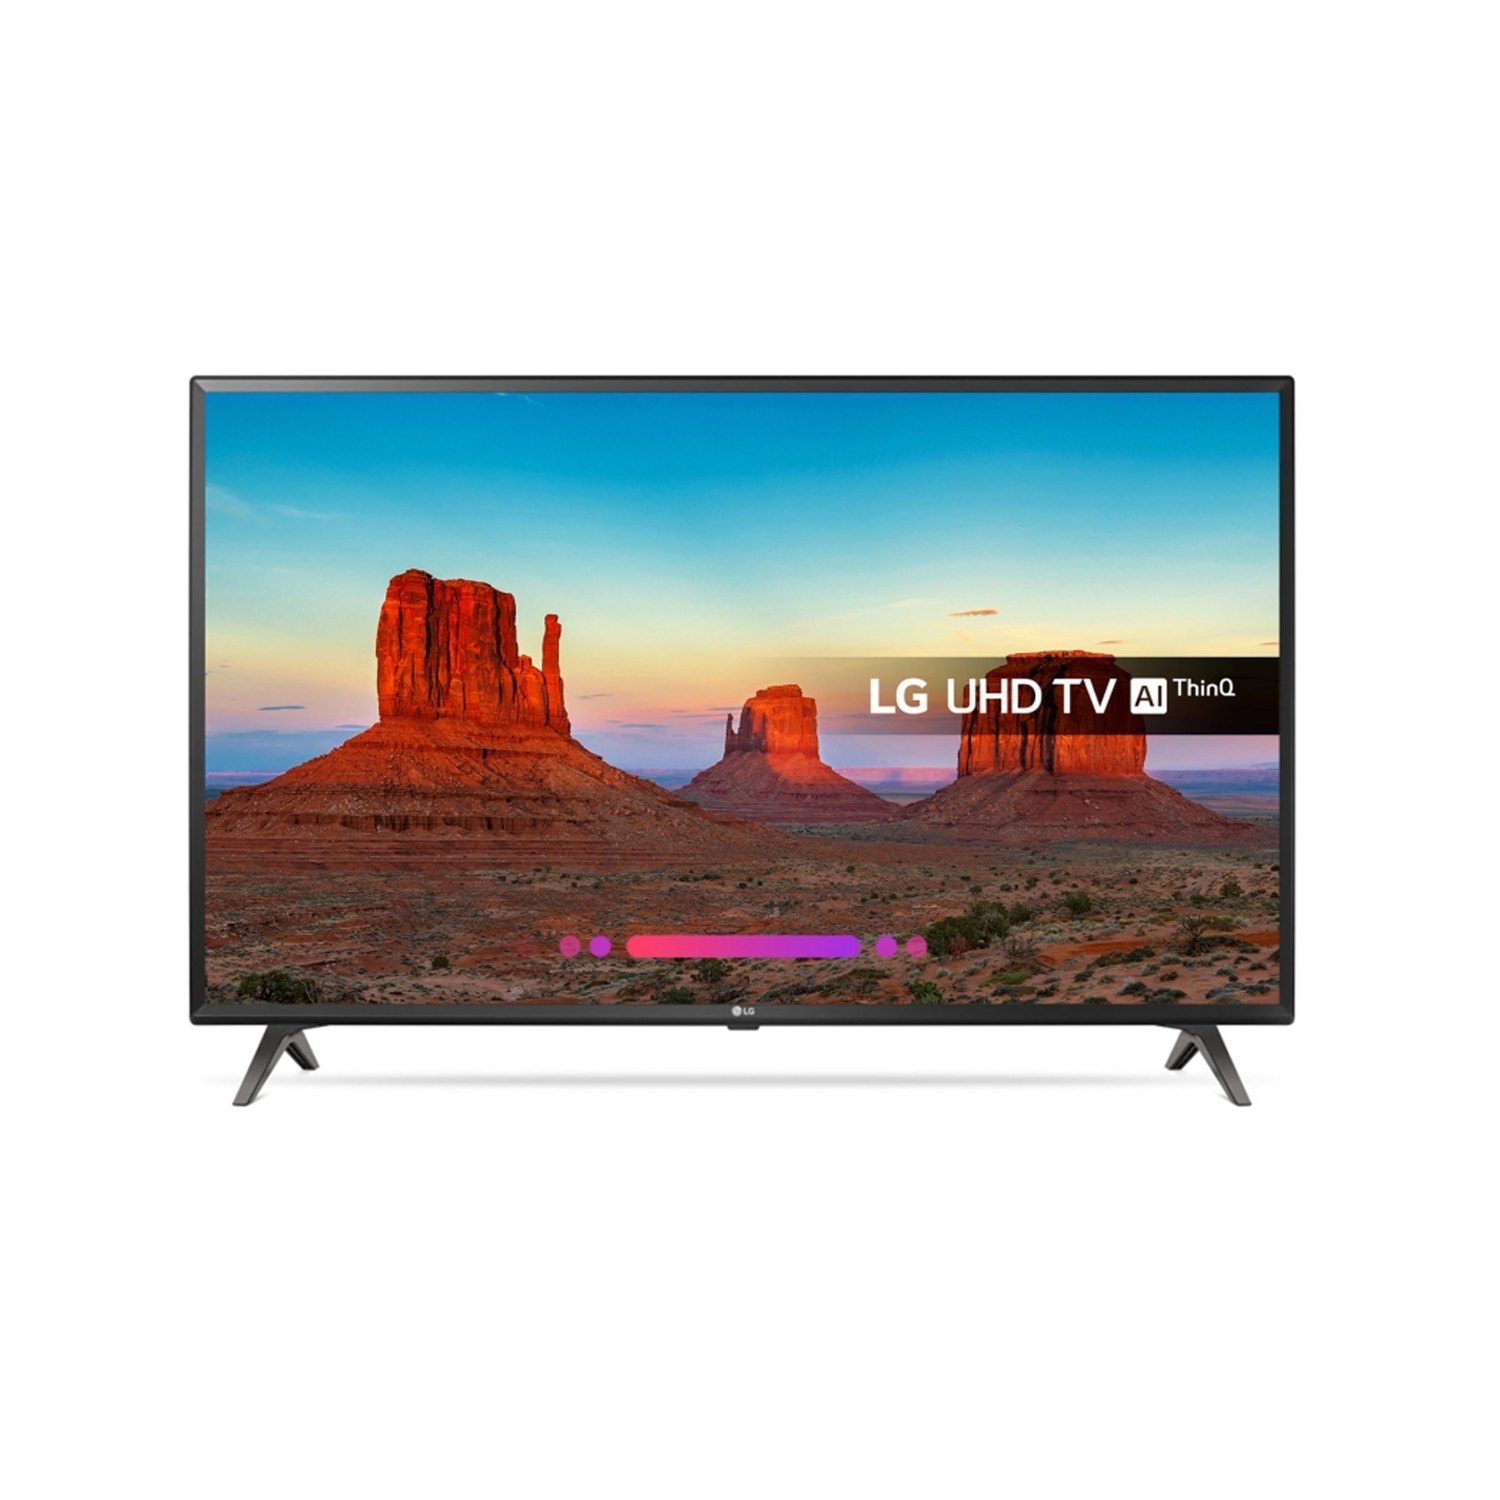 LG 43UN6400 ULTRA HD 4K TV - 0